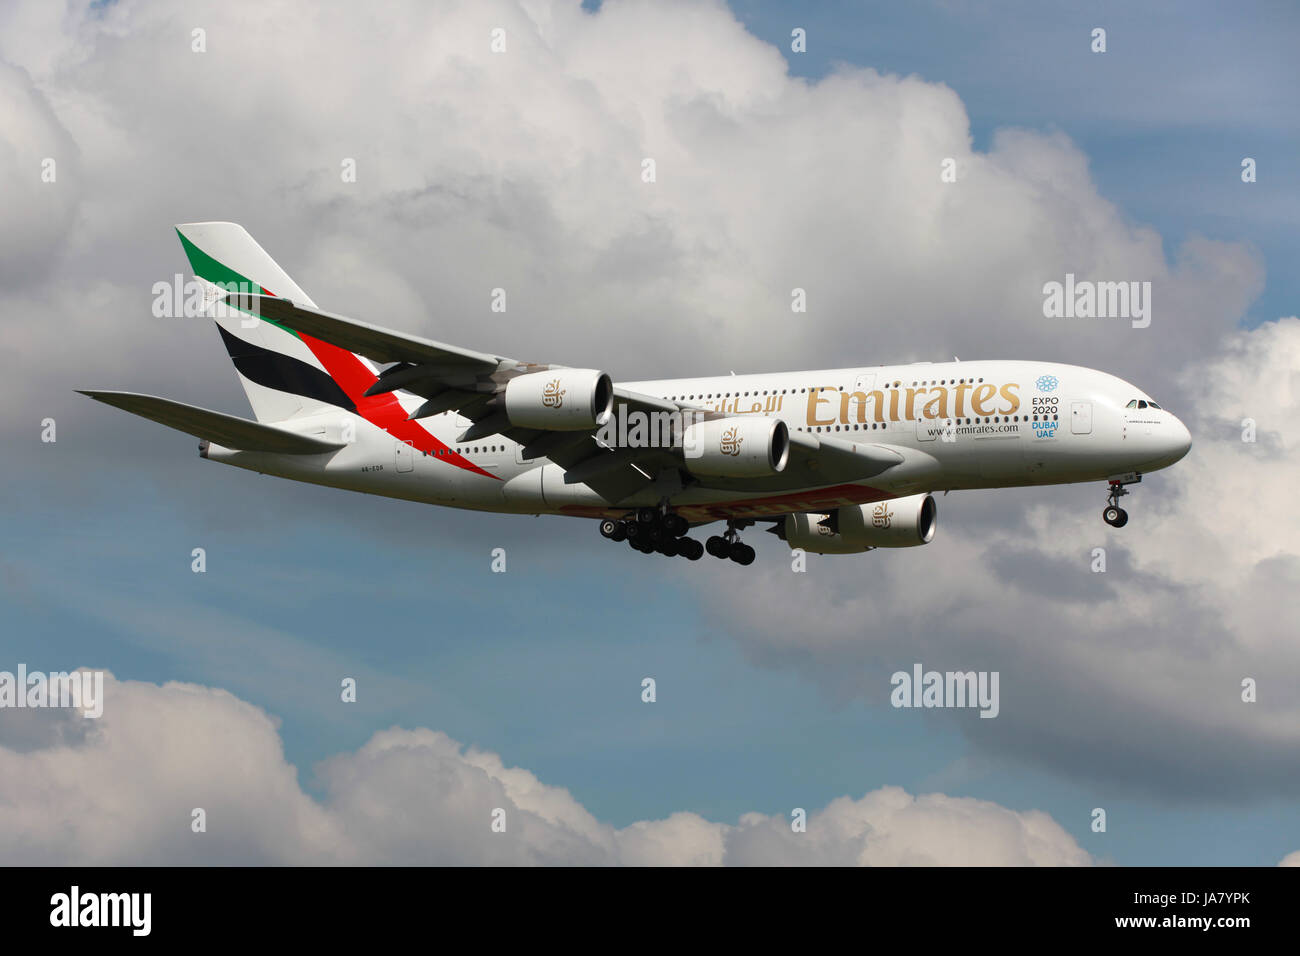 Aeroporto di Londra Heathrow, Großbritannien - 25. Mai 2013: Ein Airbus A380 der Emirates mit der Kennung A6-EDR landet auf dem Flughafen London Heathrow (LHR). Der Airbus A380 Superjumbo ist das größte Passagierflugzeug der Welt. Emirates ist eine staatliche Fluggesellschaft mit Sitz in Dubai in den Vereinigten Arabischen Emiraten und der größte Betreiber der A380. Foto Stock